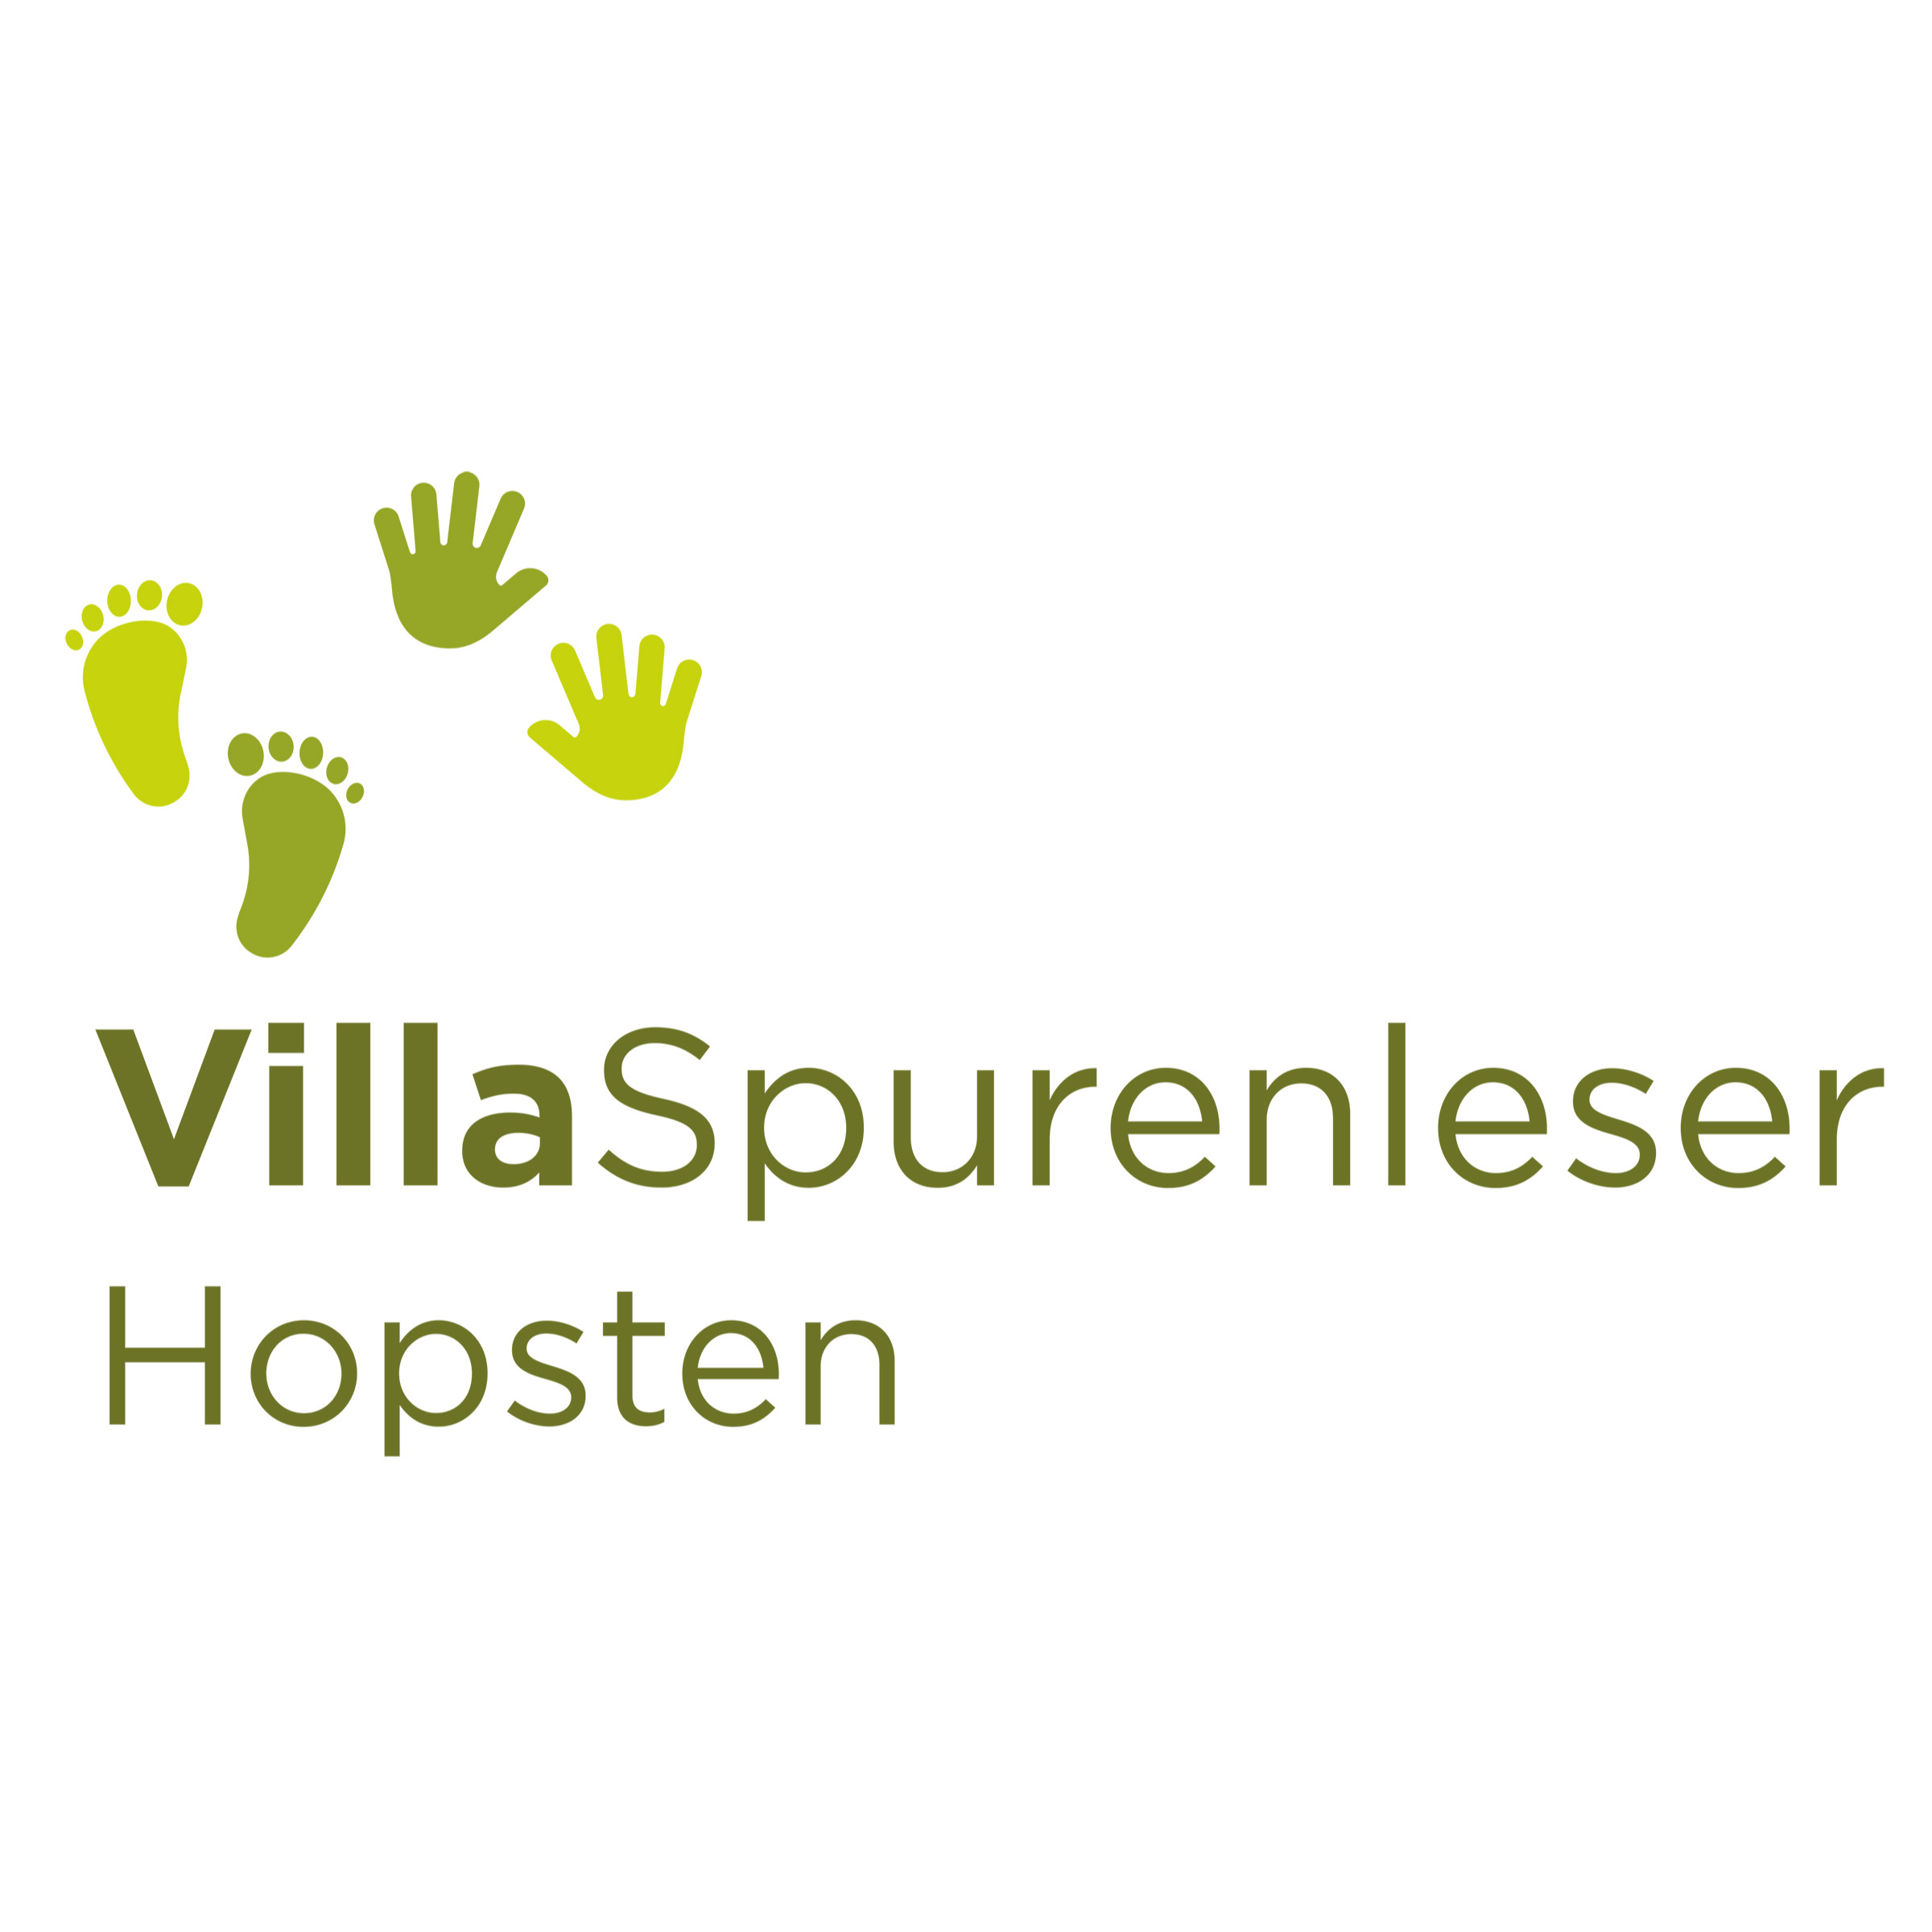 Villa Spurenleser
Hopsten
pme Familienservice
global education
Kita